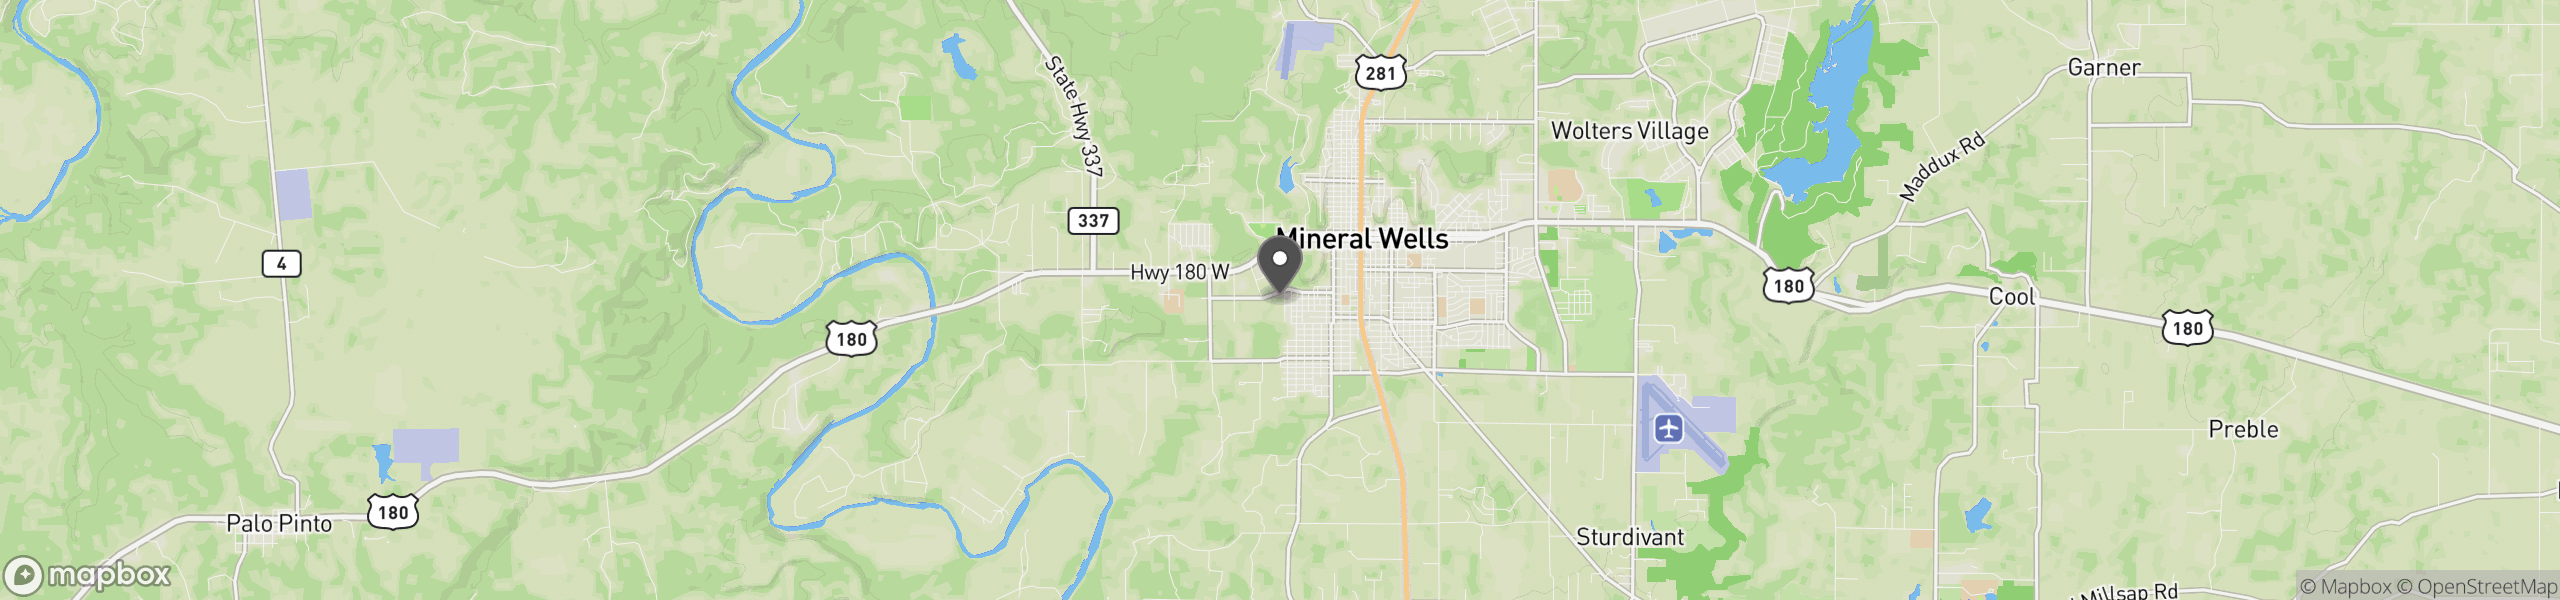 Mineral Wells, TX 76067